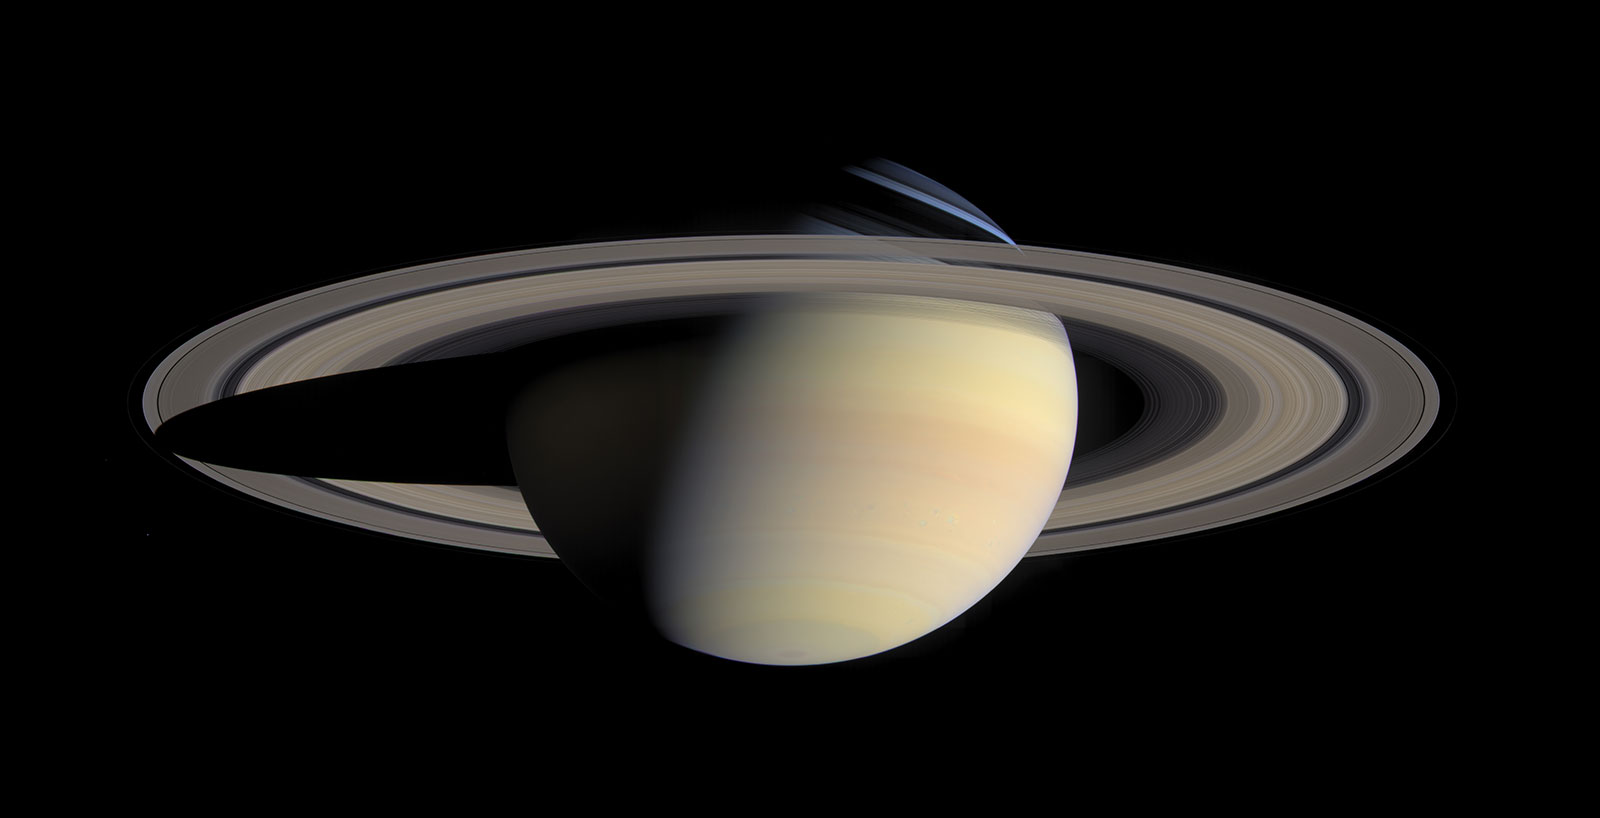 Abbildung zeigt den Planeten Saturn